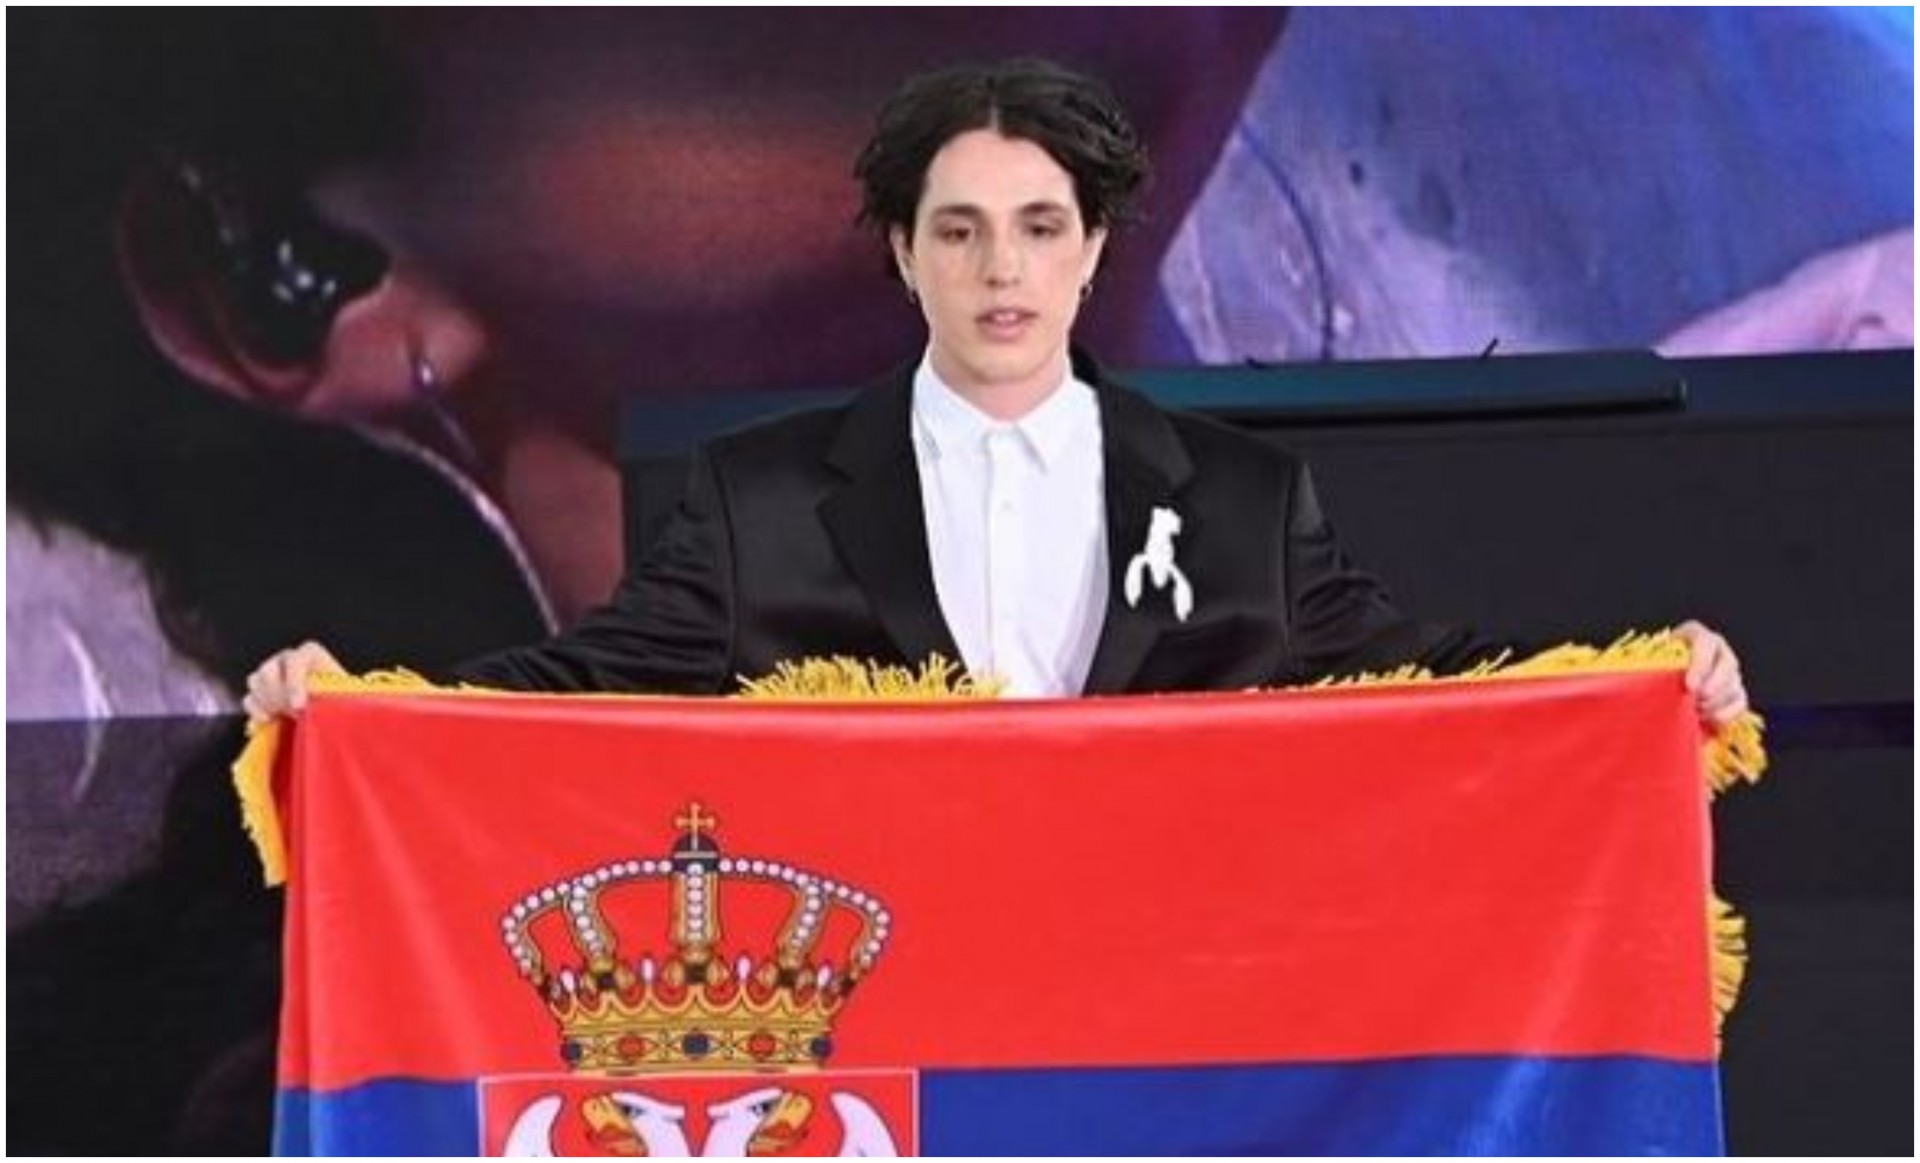 Српскиот претставник на Евровизија се огласи за британските медиуми: Простете што нема да можам да бидам весел, моите мисли се со жртвите и нивните семејства